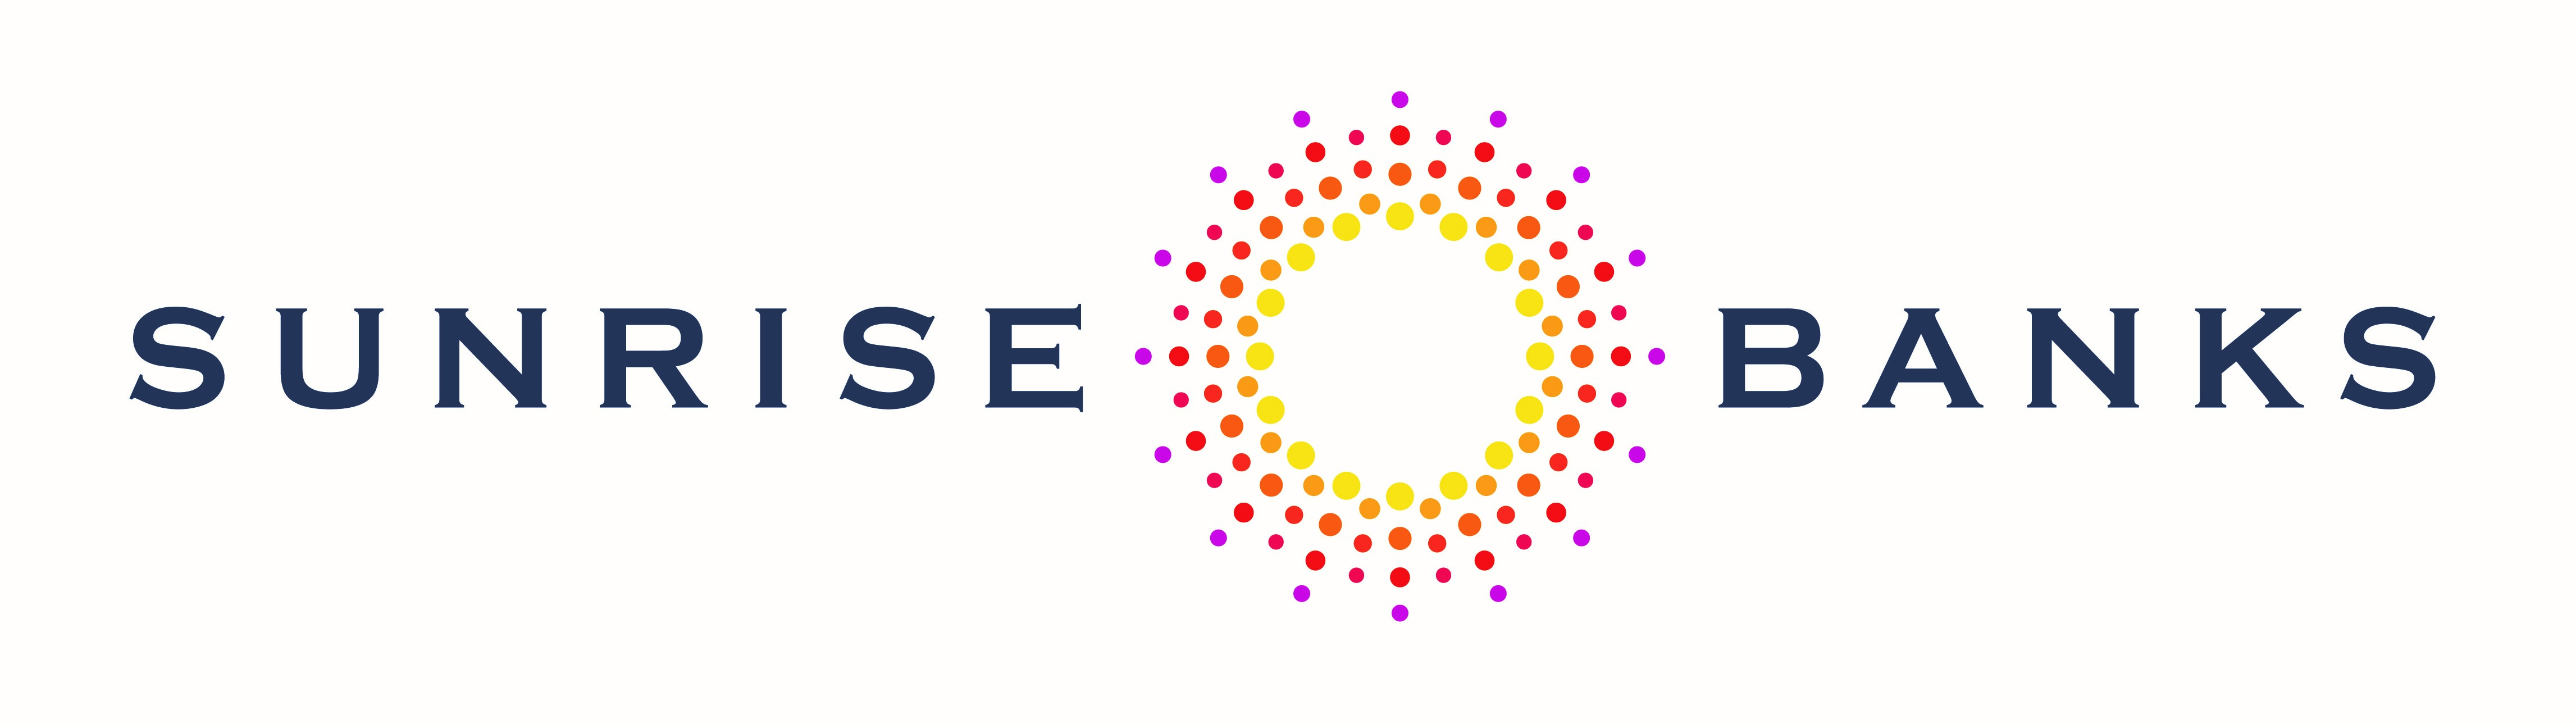 Sunrise banks logo